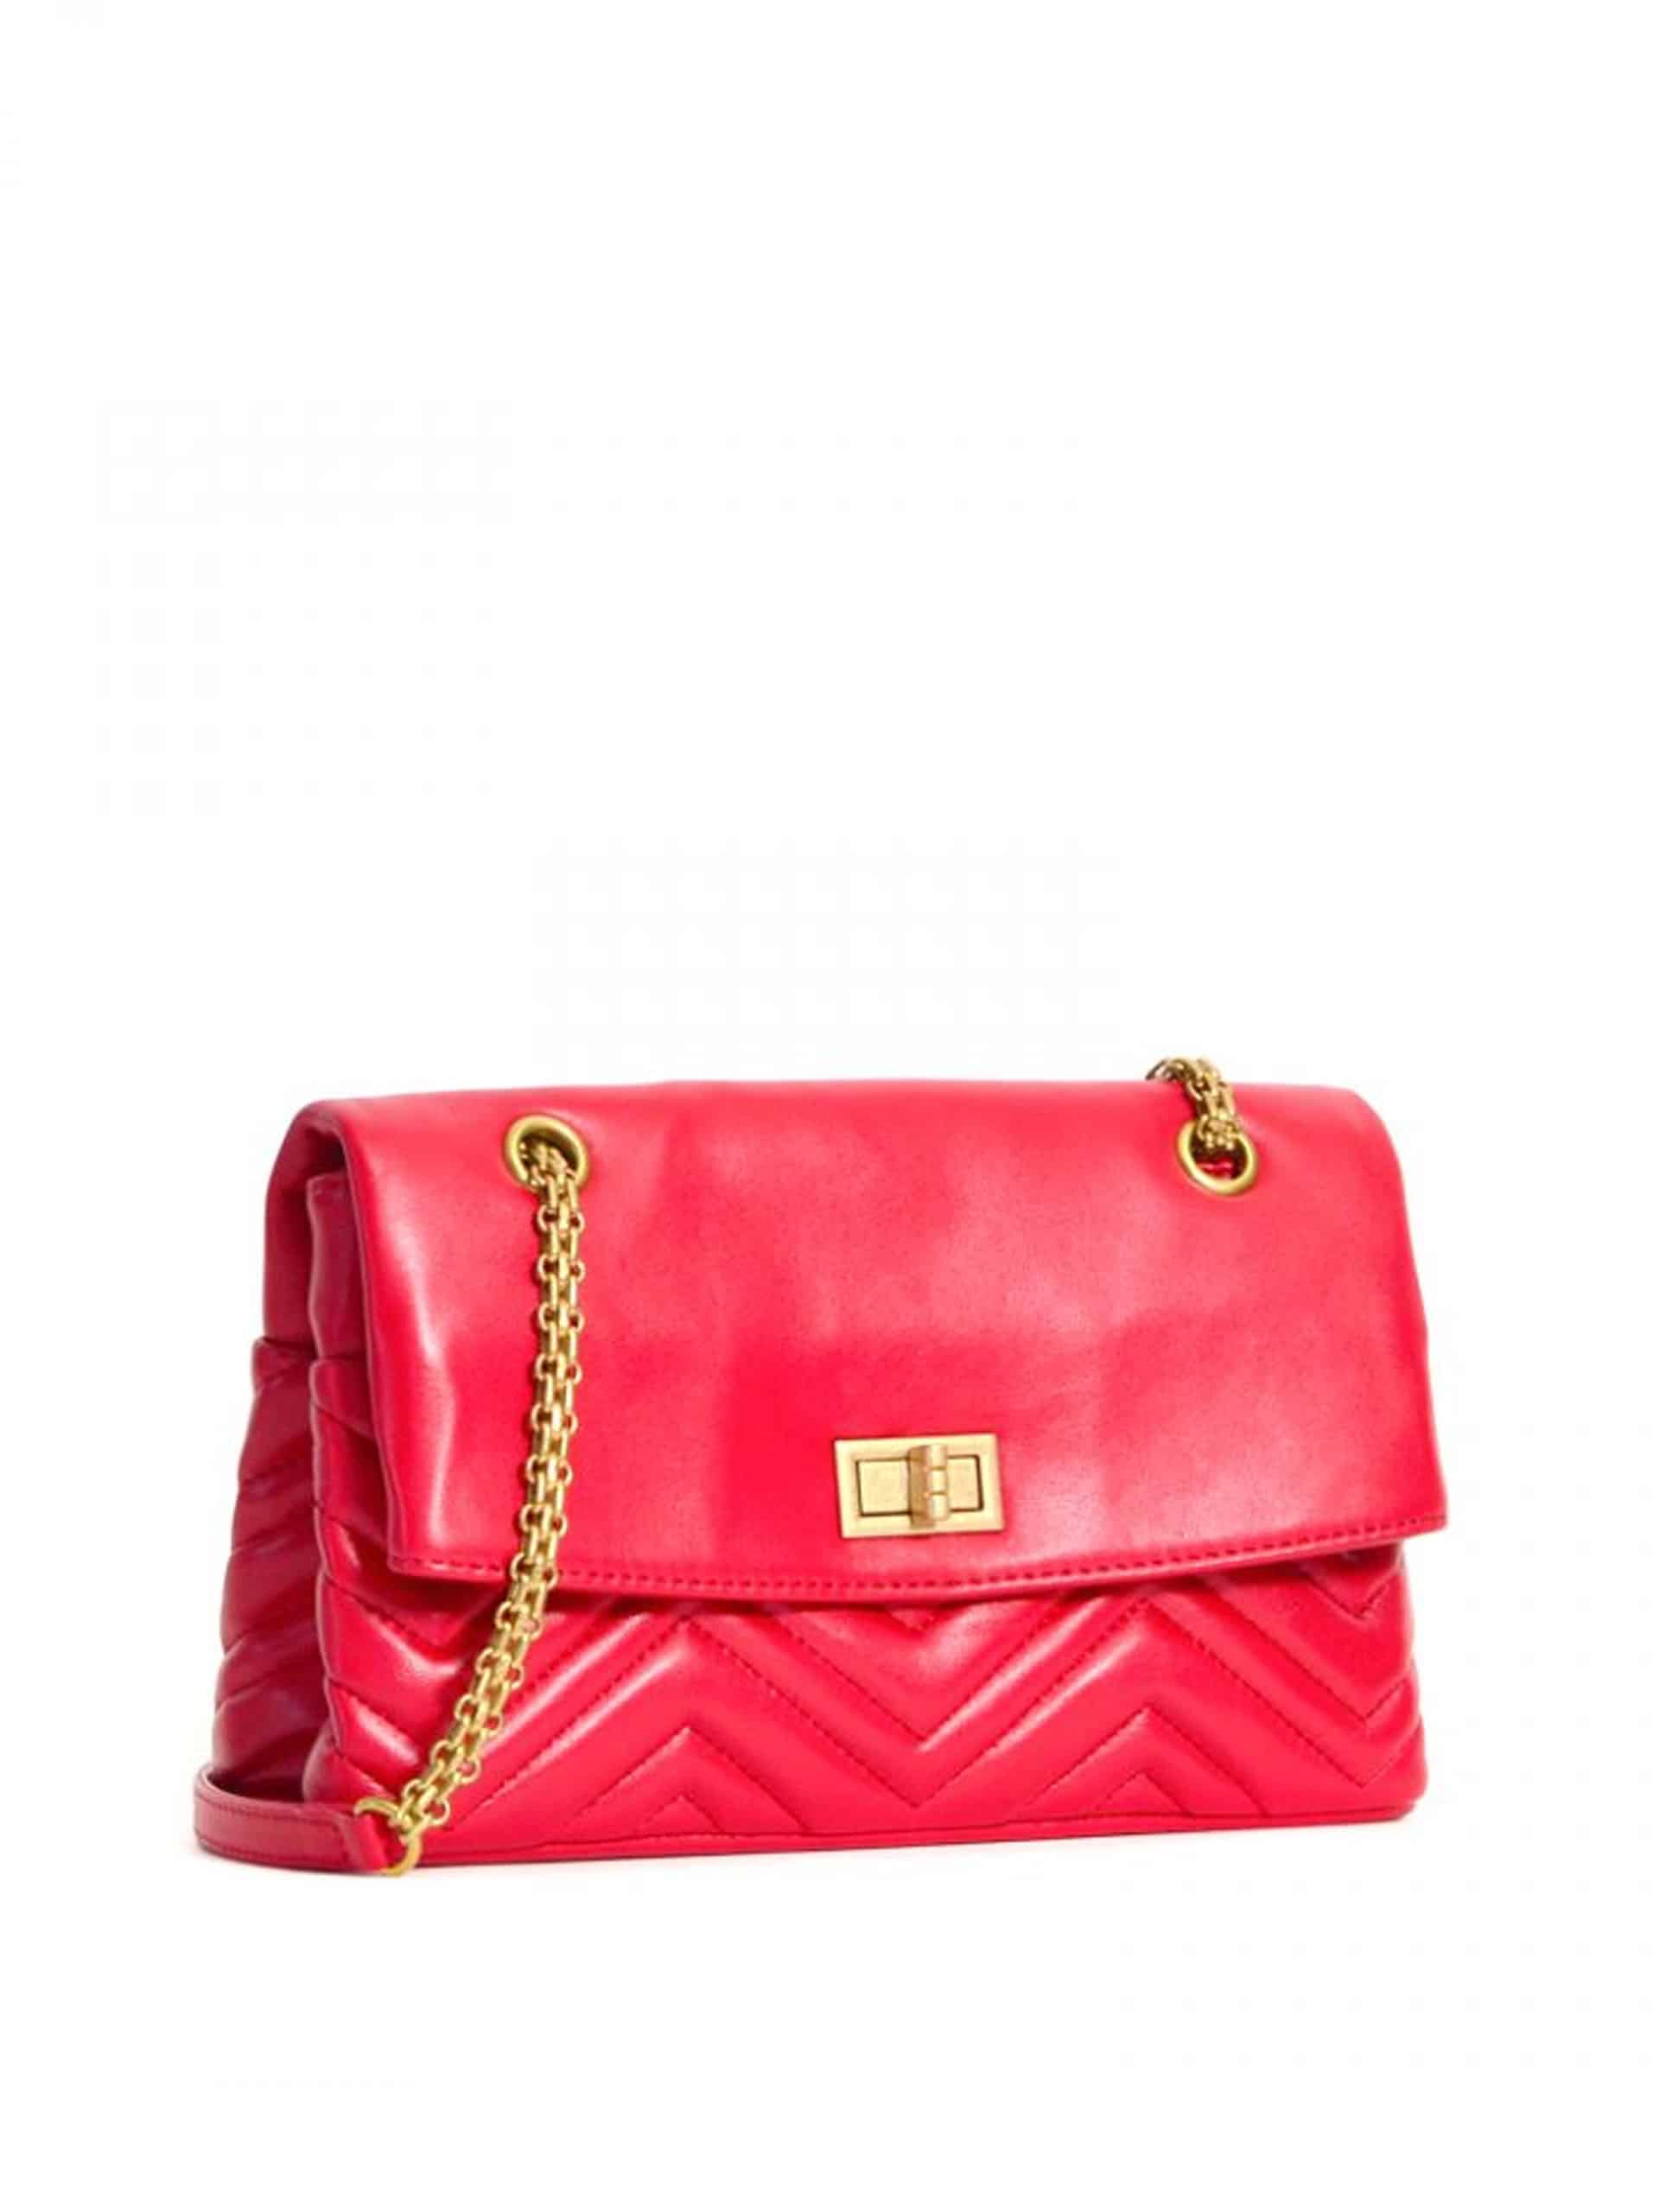 VLV Kimberly Shoulder Bag Red - Averand